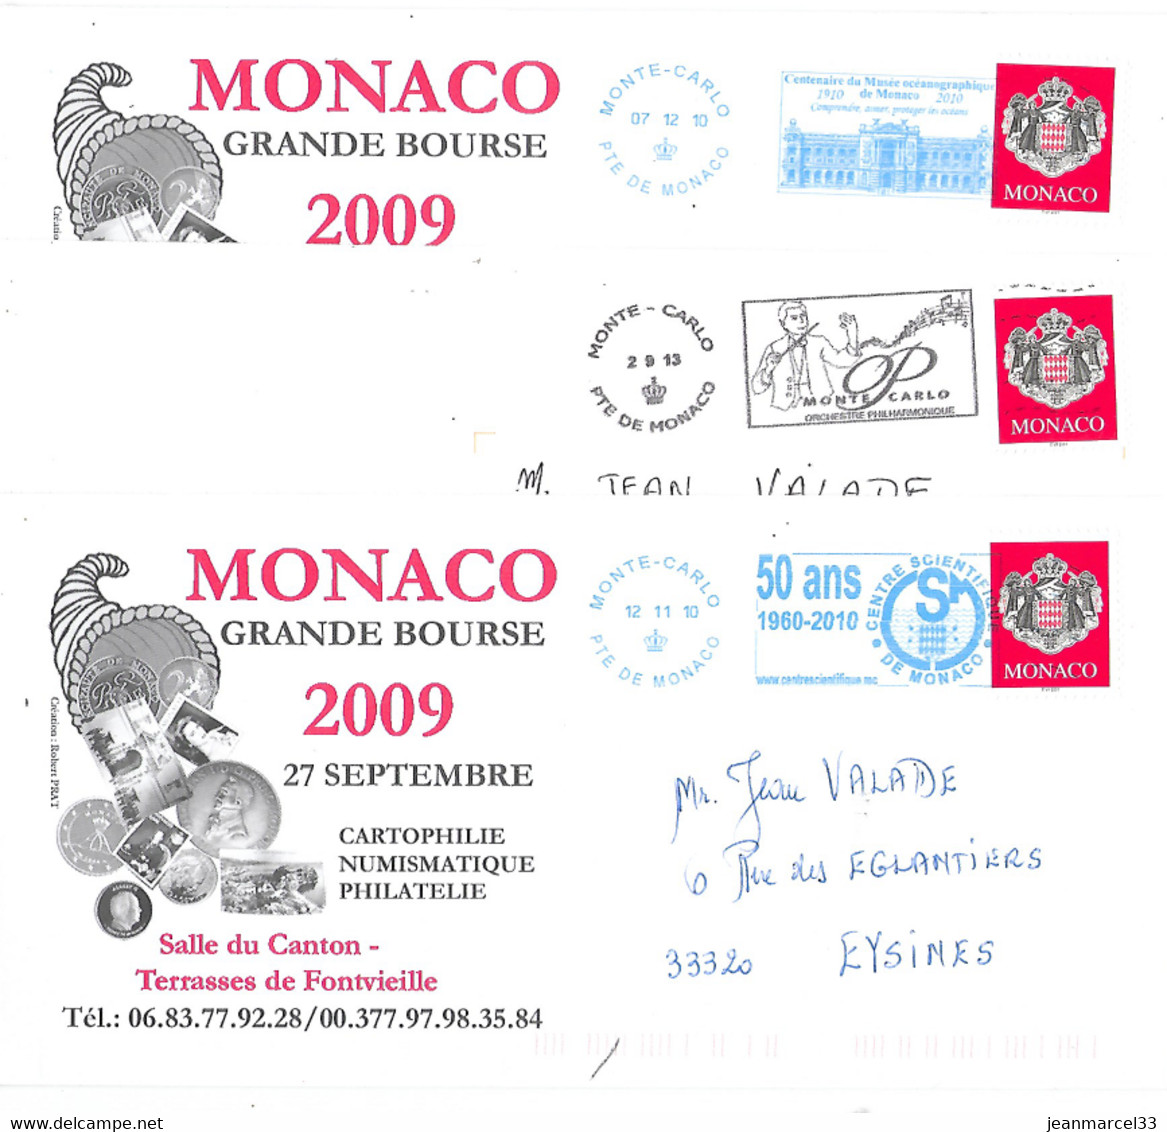 Monaco 3 Enveloppes Avec Flammes Du Type Néopost, Deux En Bleu Et Une En Noire - Machines à Affranchir (EMA)